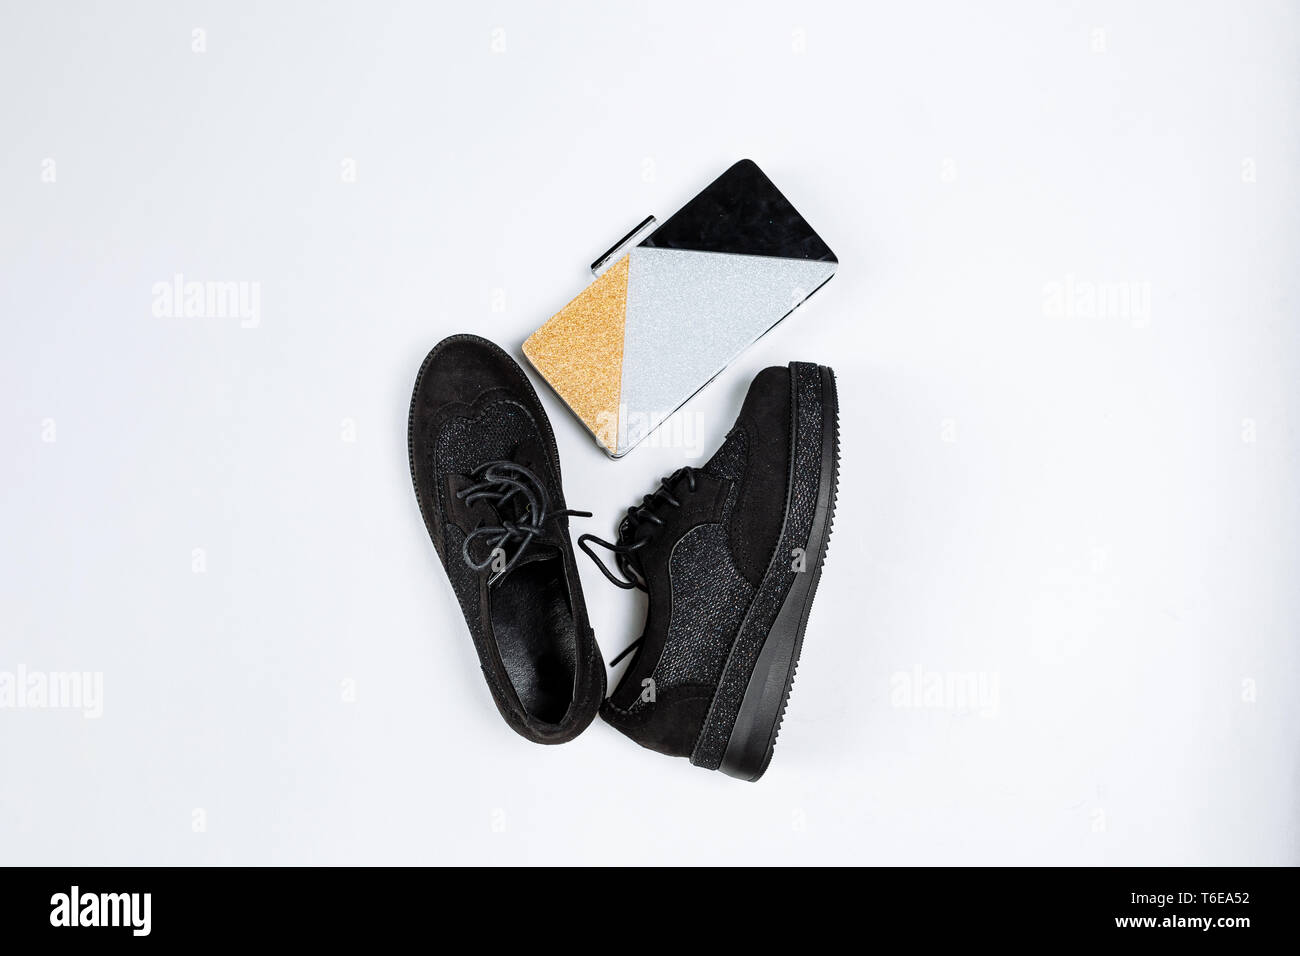 Ein Paar schwarze trendige Schuhe mit glänzenden Einsätzen auf eine dicke Sohle und ein drei-farbe Clutch mit funkelt auf weißem Hintergrund Stockfoto